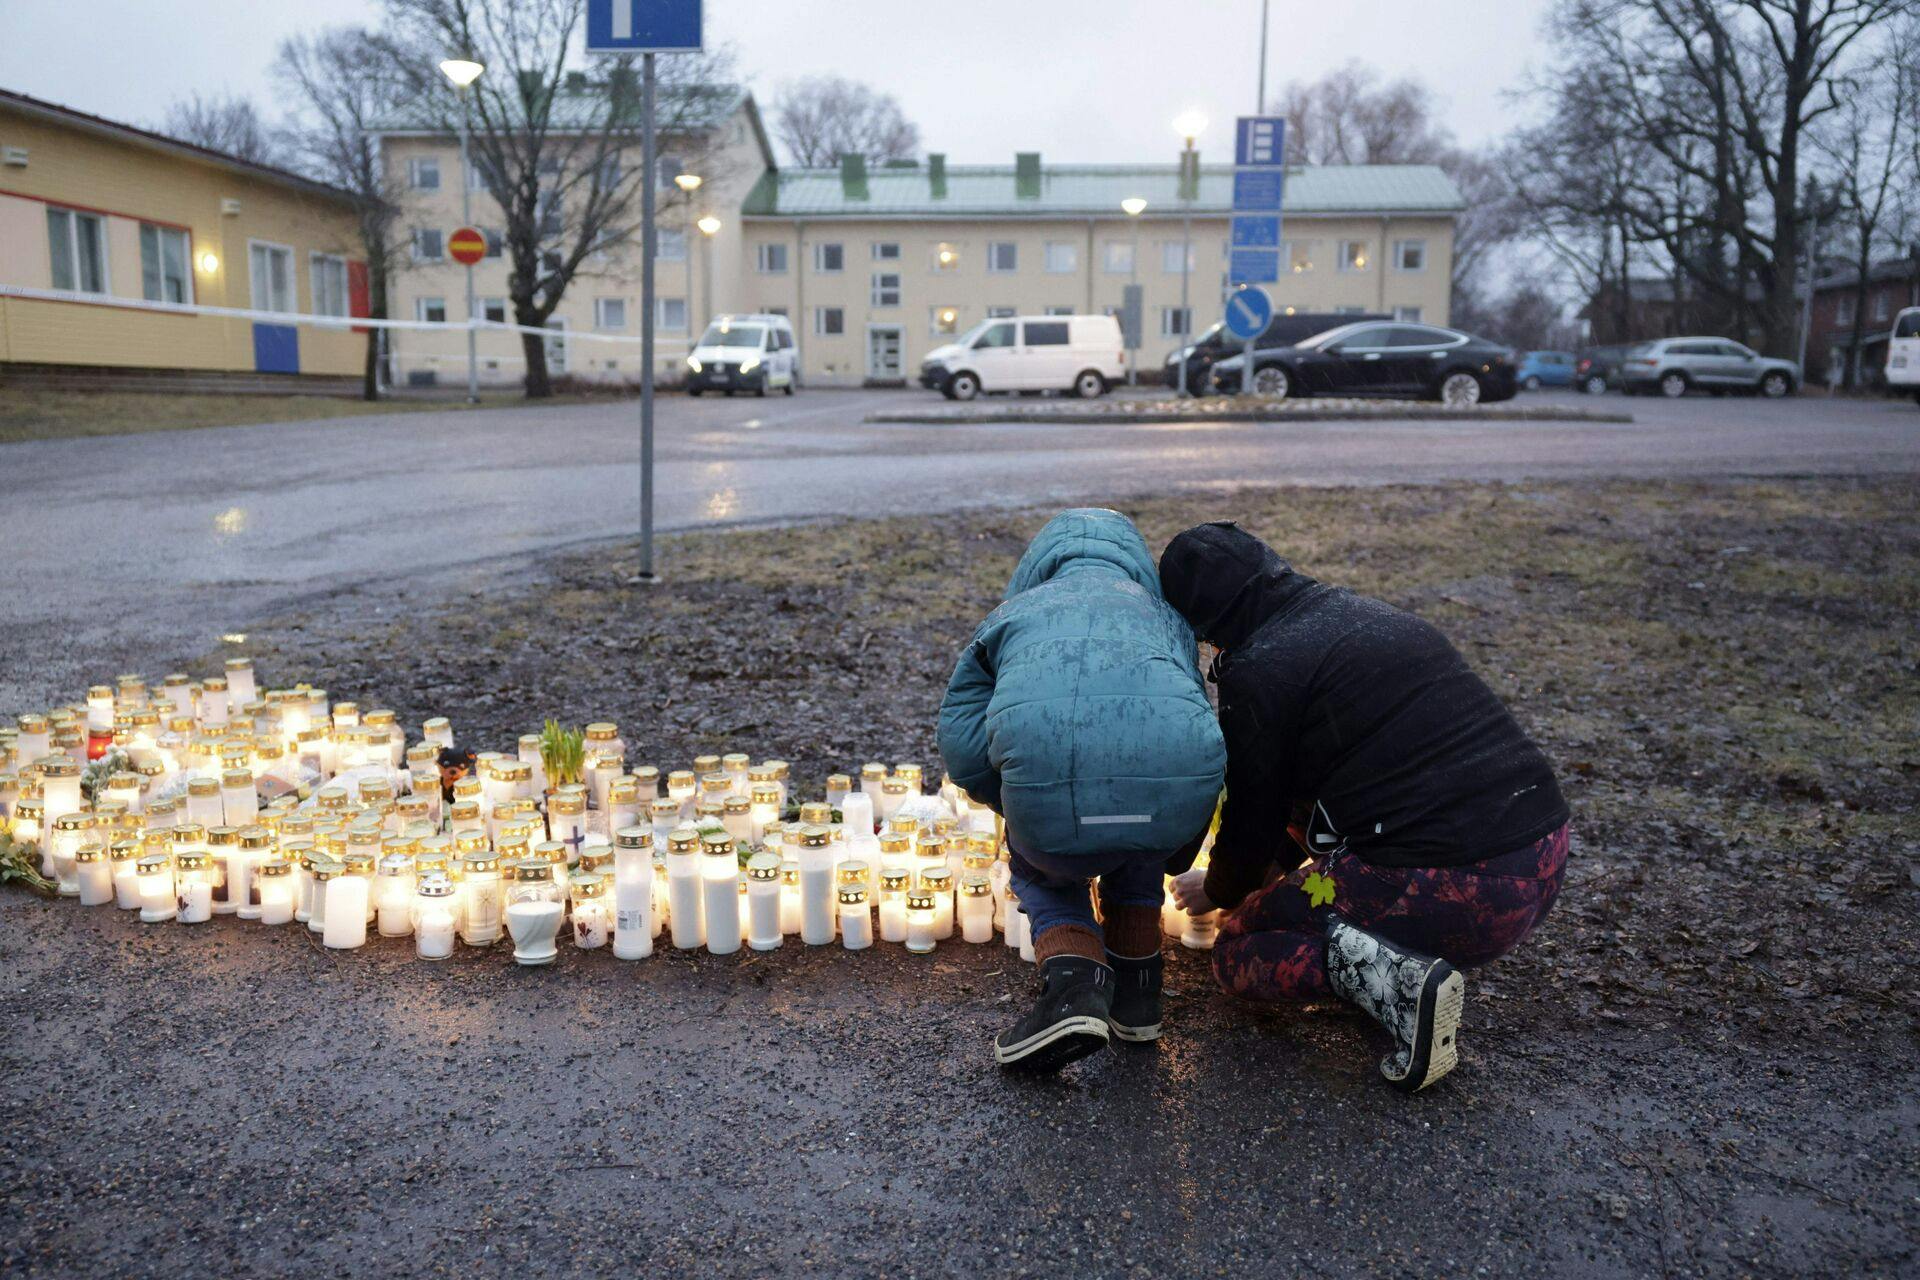 Torsdag bliver to af de børn, som blev skudt ved et skoleskyderi i Finland, fortsat behandlet på hospitalet. Deres skader beskrives som livstruende.